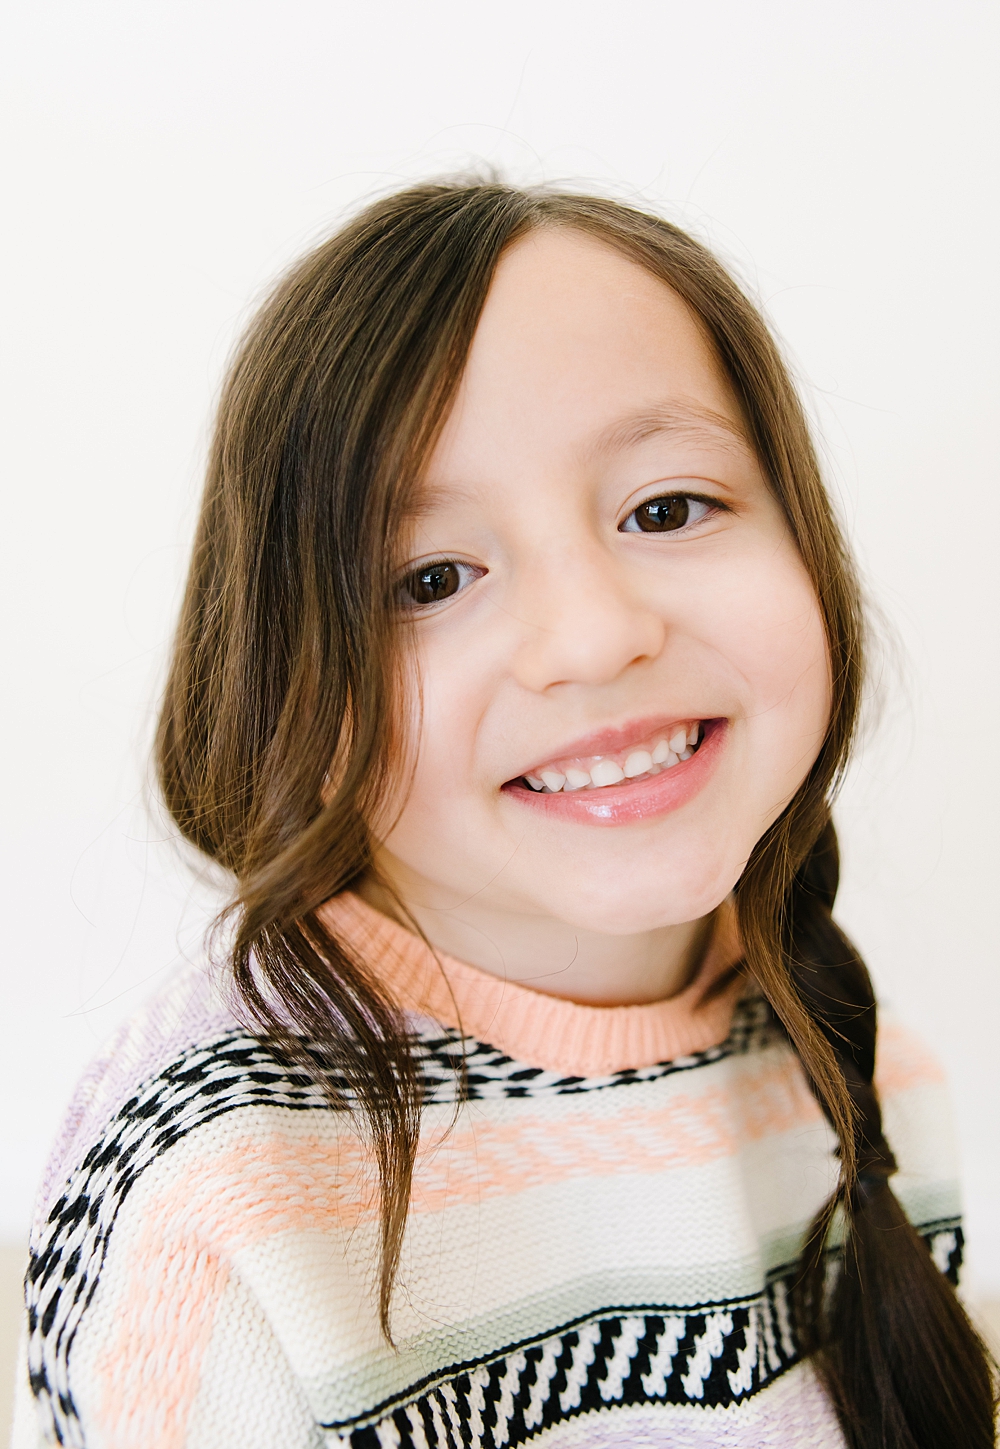 Children's Portrait Sessions | Sandy Photographer